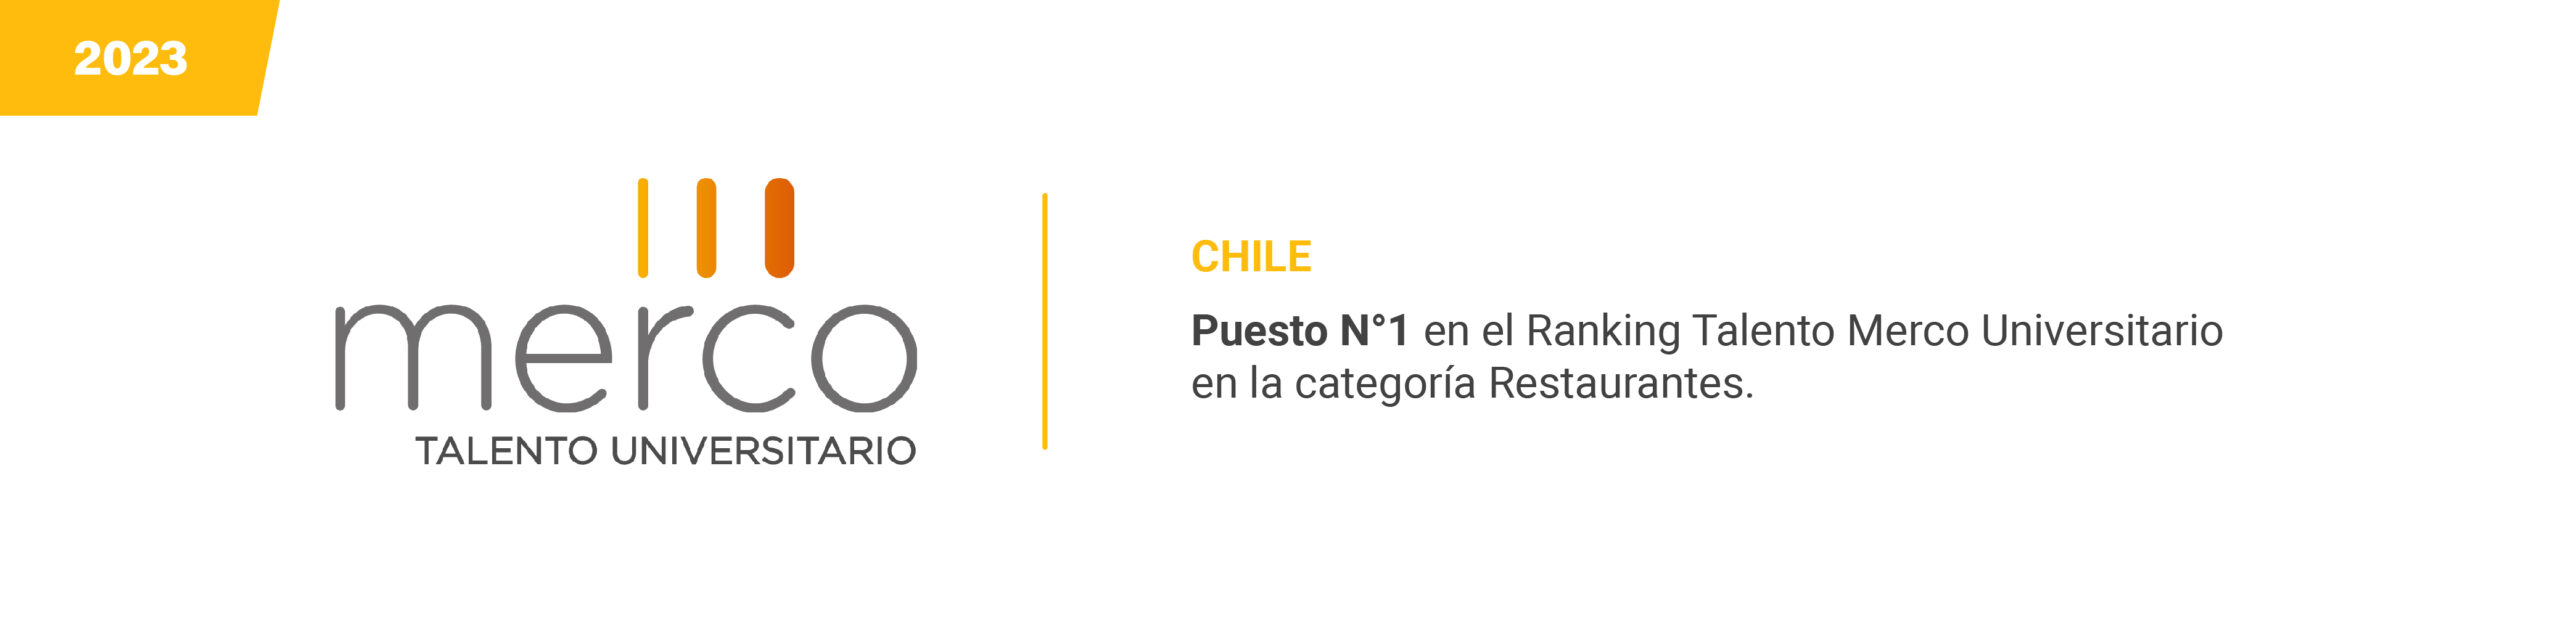 MERCO - Chile - 2023